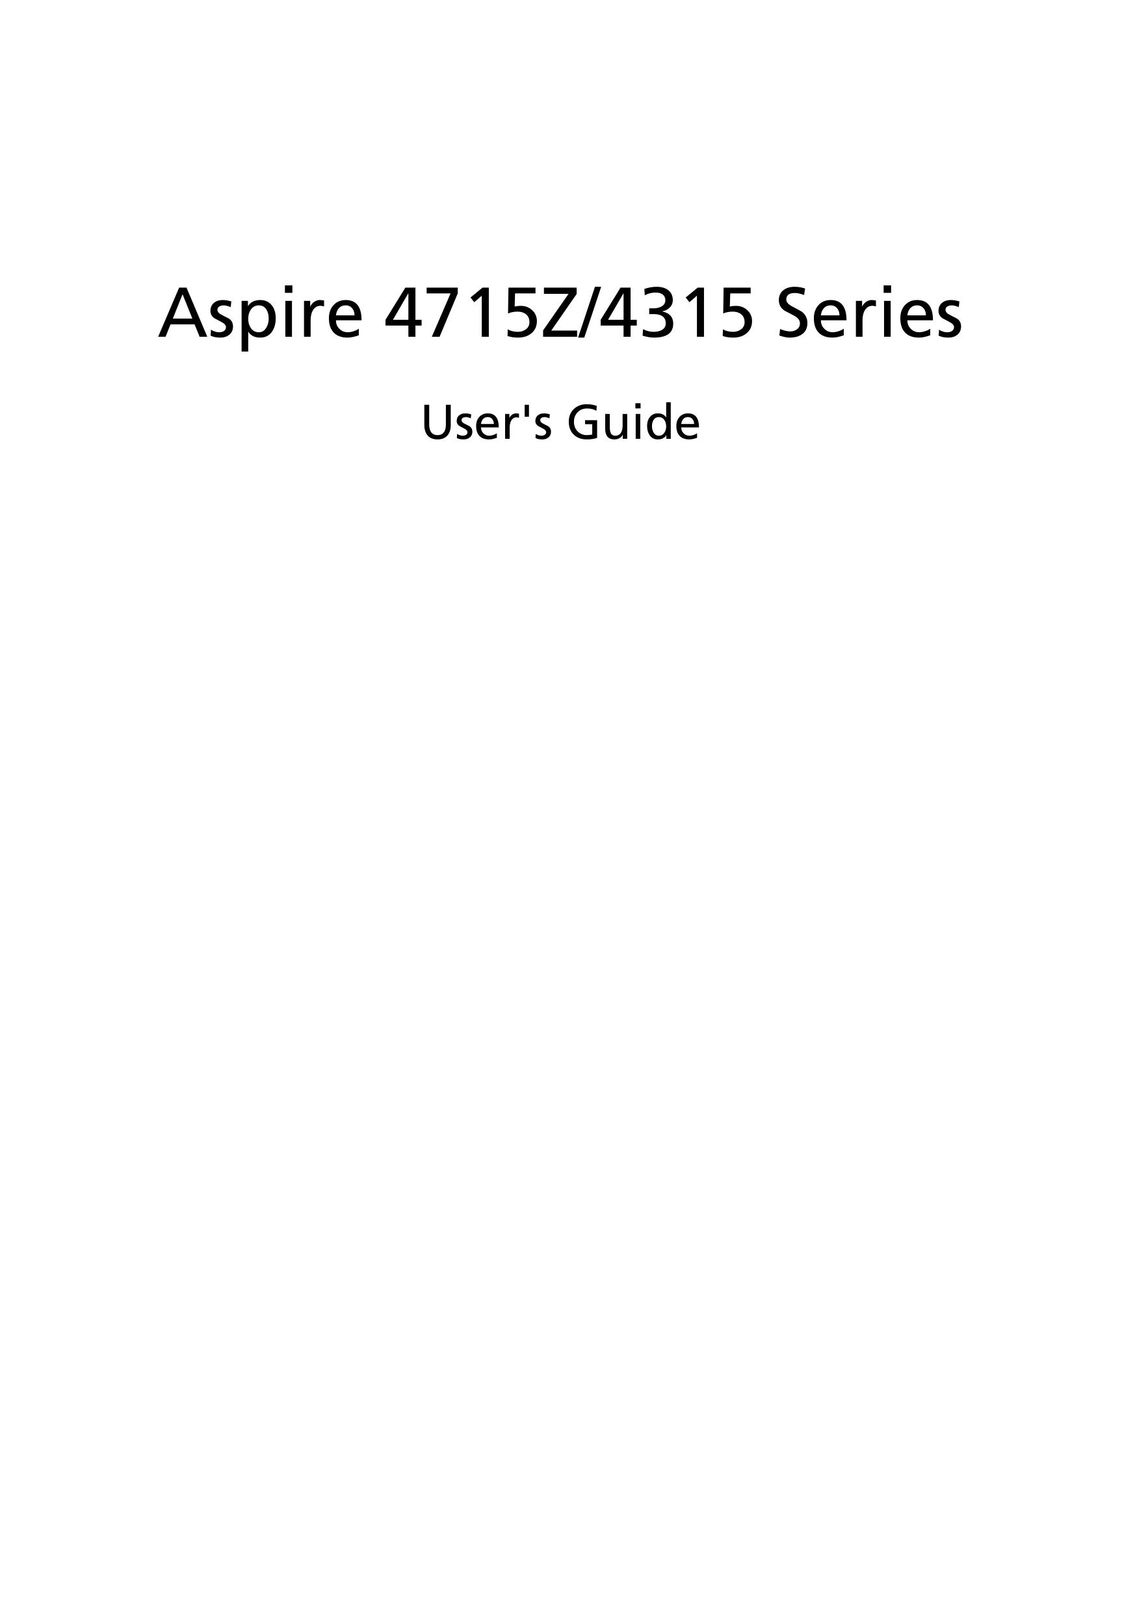 Aspire Digital 4315 Laptop User Manual